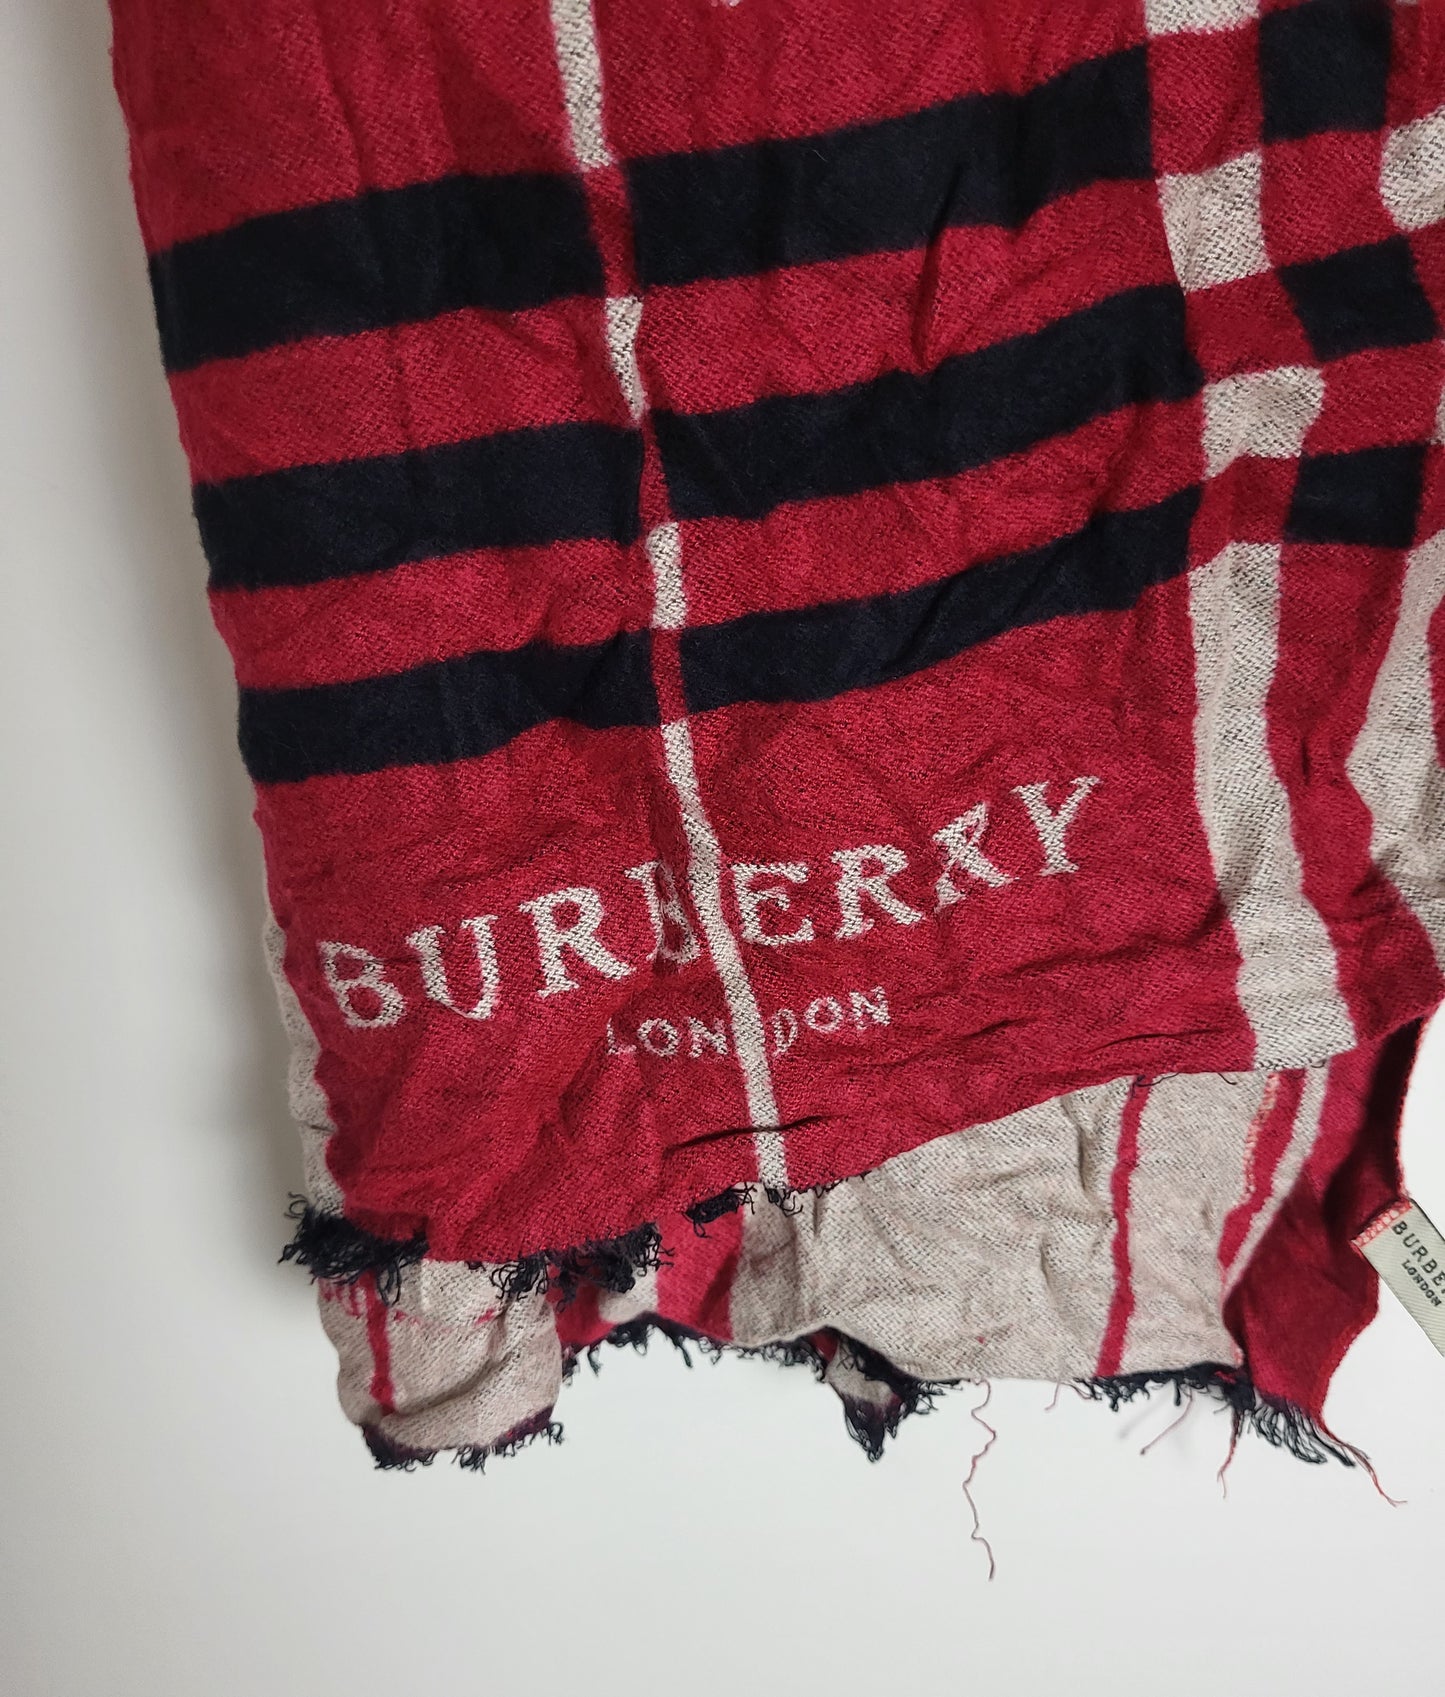 Burberry London - Schal / Tuch - Rot Tartan - Kaschmir / Seide - 160 x 60